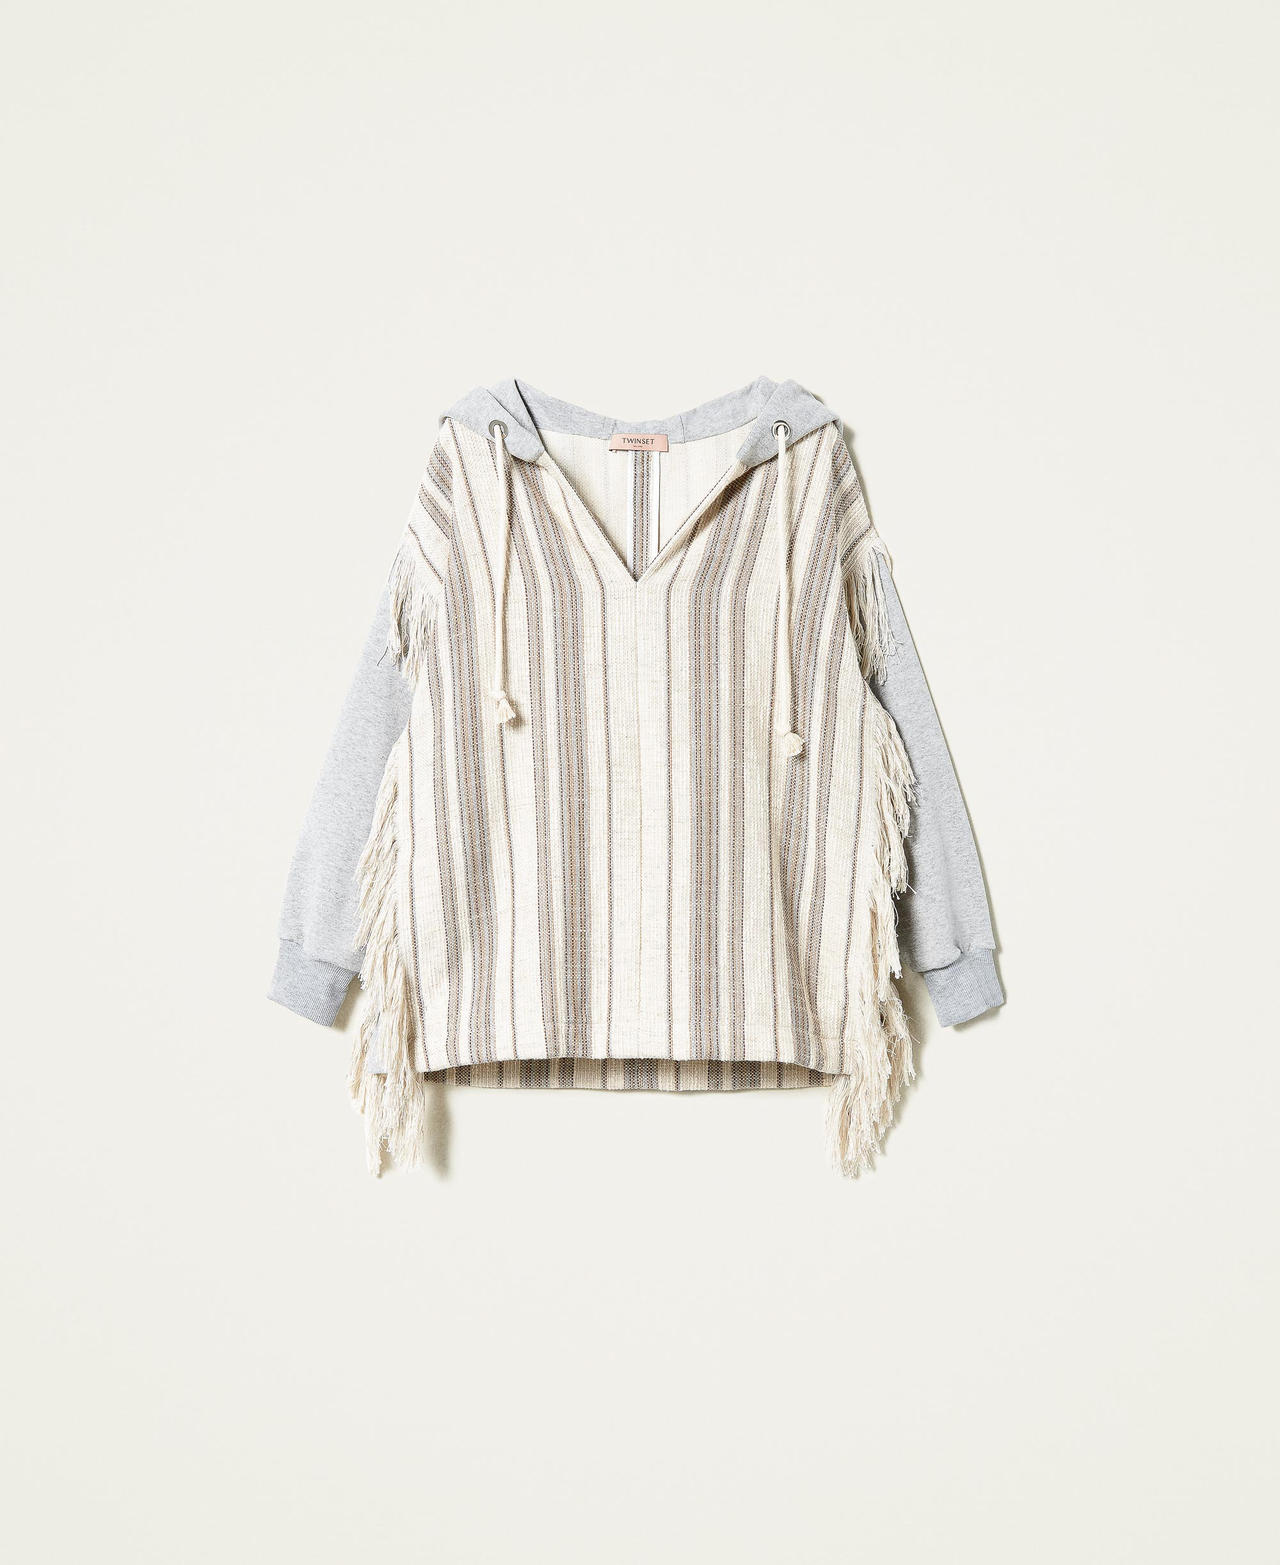 Sweat-shirt en tissu natté rayé avec franges Bicolore Tissu natté Sable/Gris Molleton Femme 221TT242A-0S